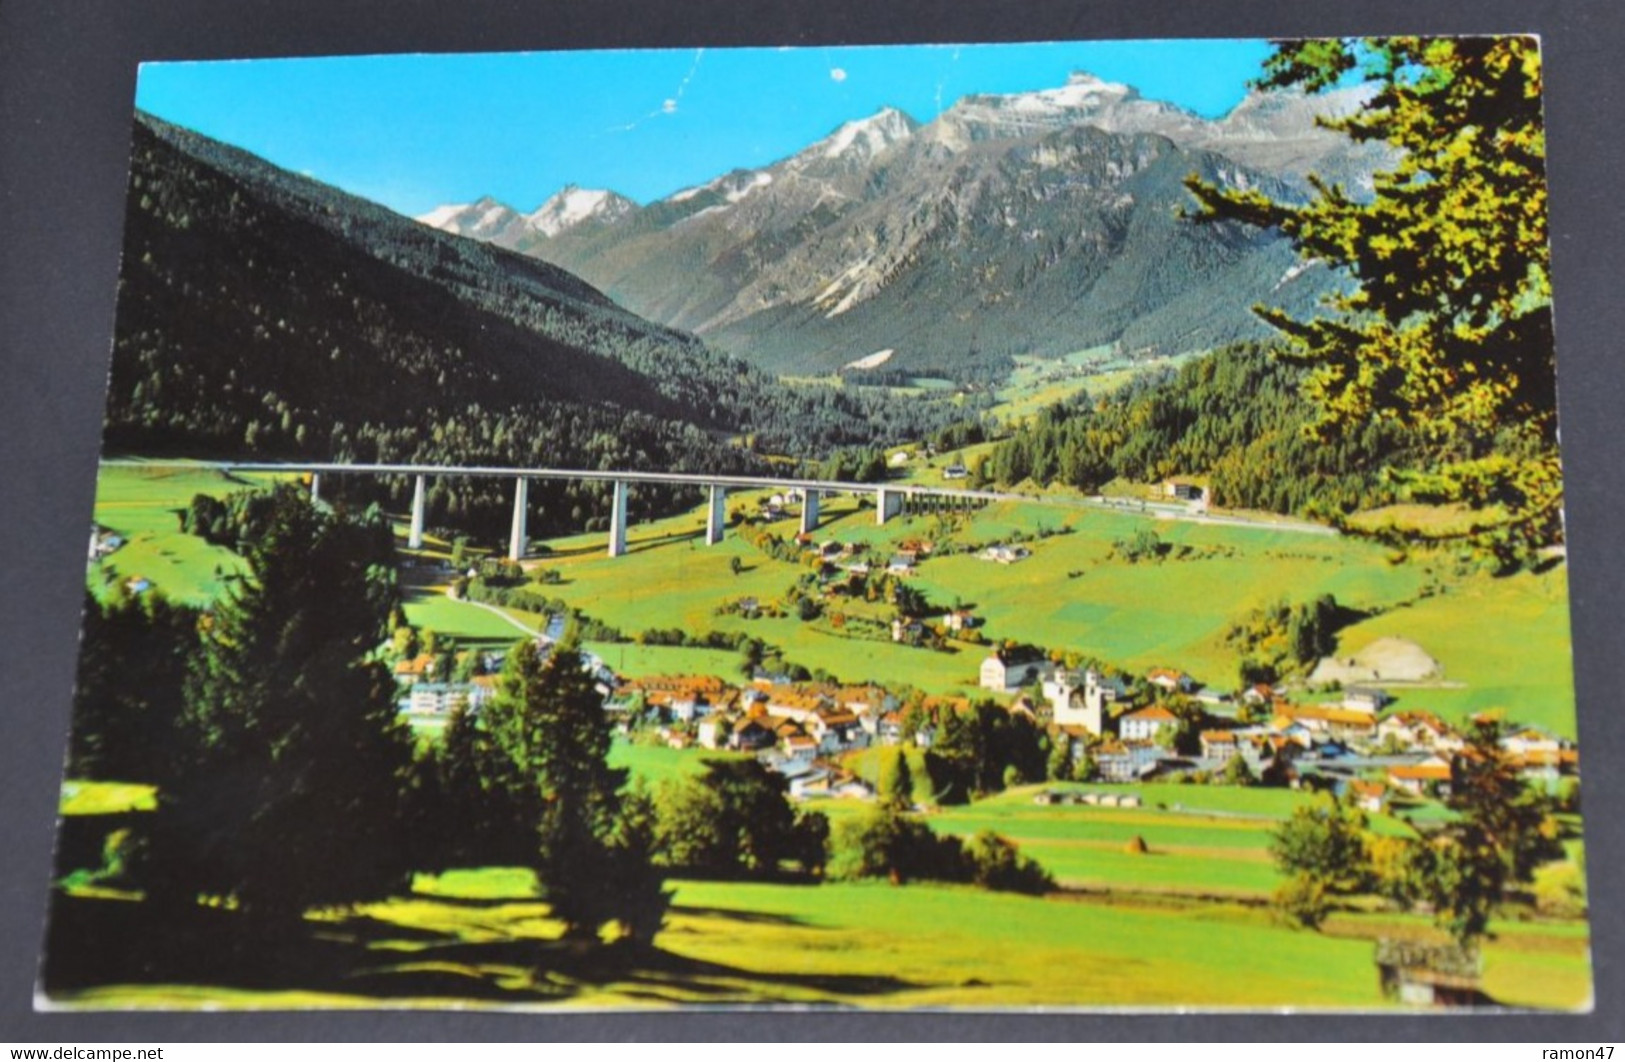 Steinach Luftkurort Mit Gschnitzltalbrücke - Tiroler Kunstverlag Chizzali, Innsbruck - # 32 129 - Steinach Am Brenner